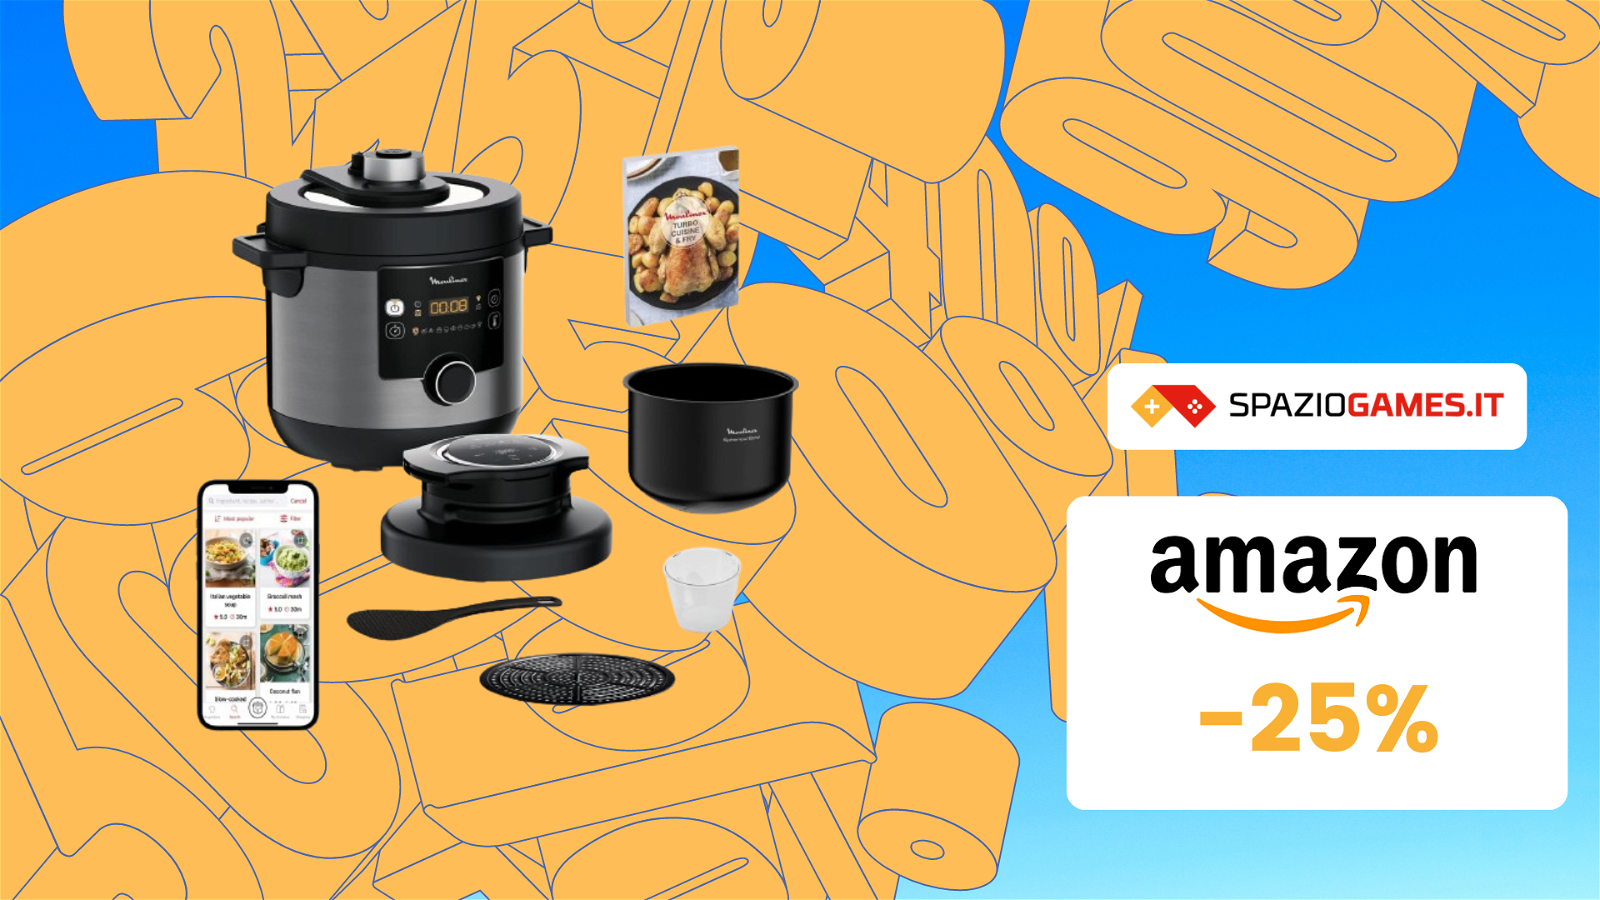 Multicooker Moulinex 15 in 1 a un prezzo TOP su Amazon! (-25%)